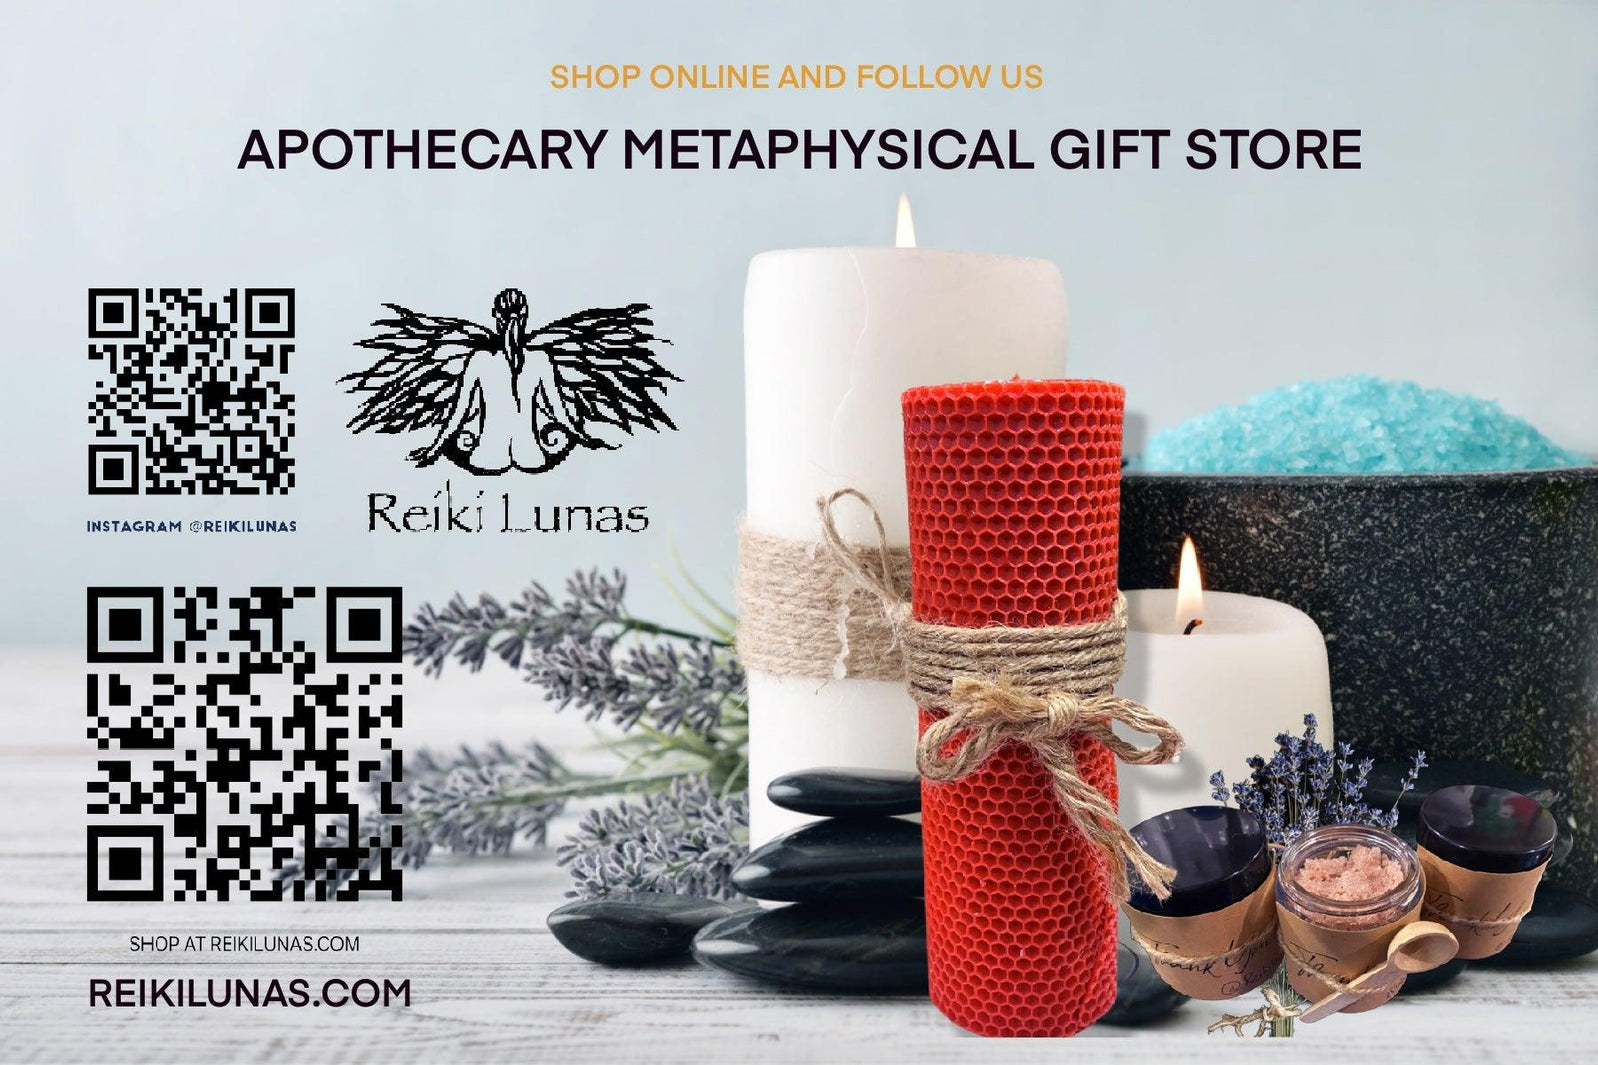 An Apothecary Metaphysical Gift Shop, also described as an Alternative Healing Shop - REIKI LUNAS, CRAFTS & ARTISAN